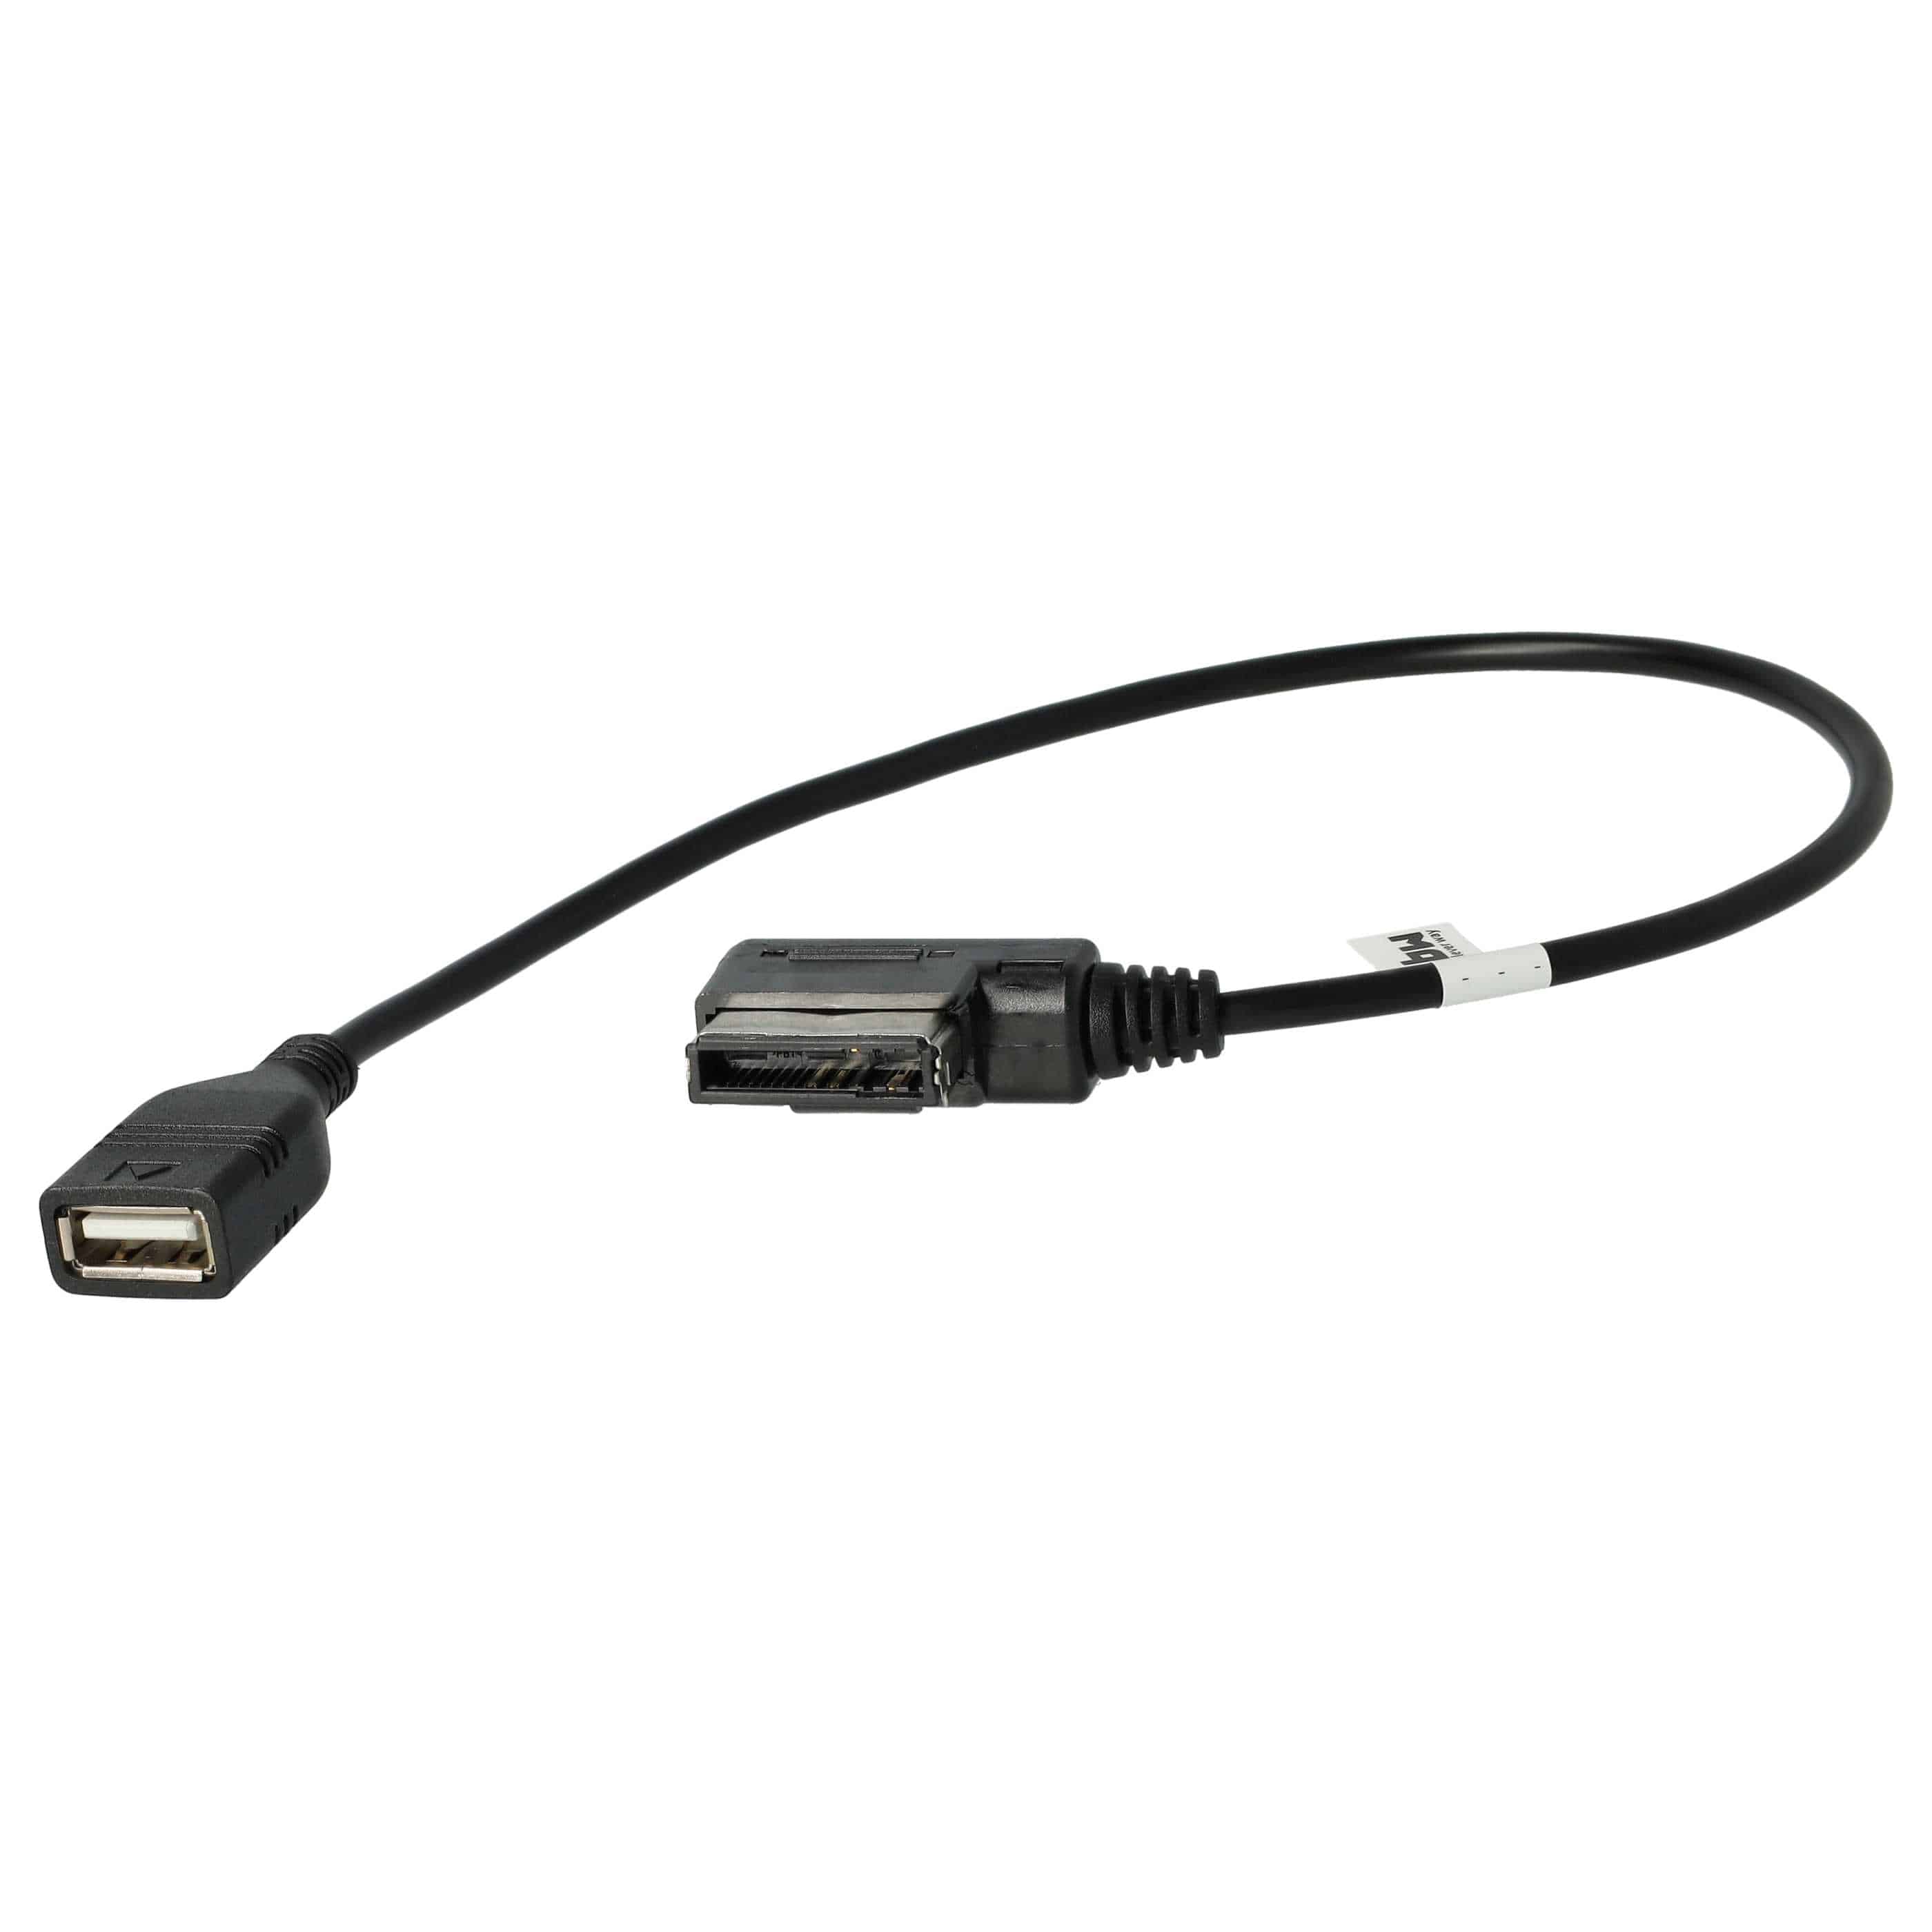 Audio Kabel passend für Audi Auto, Fahrzeug u.a. - USB-Adapter, 37,1 cm lang